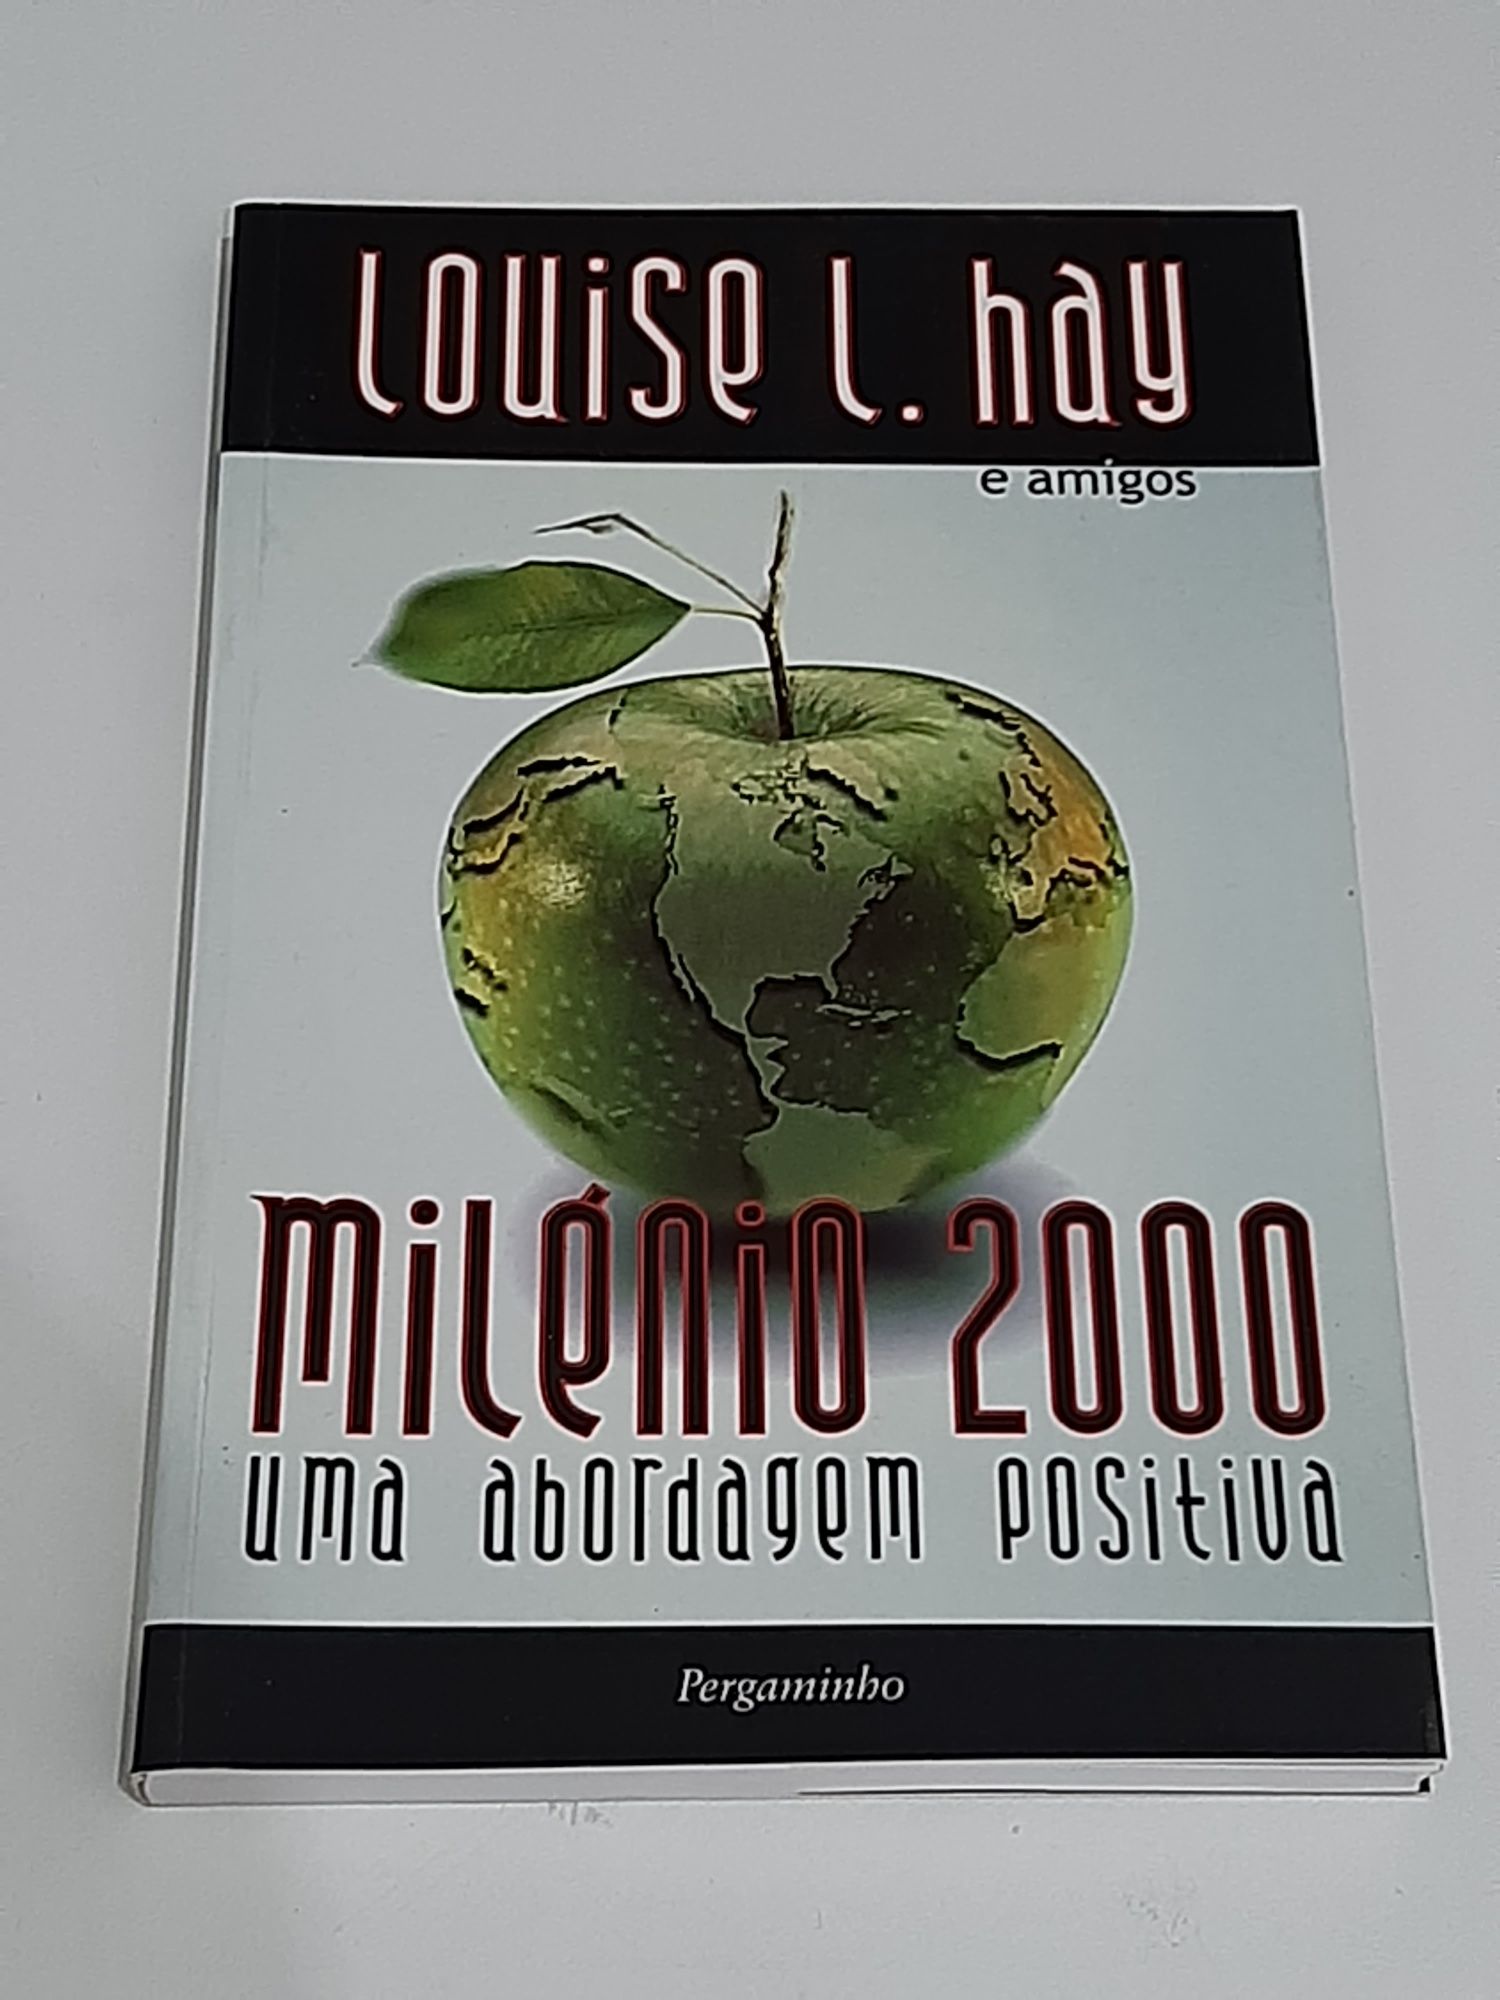 Auto Ajuda - Louise L. Hay - Milénio 2000 - Portes Gratuitos